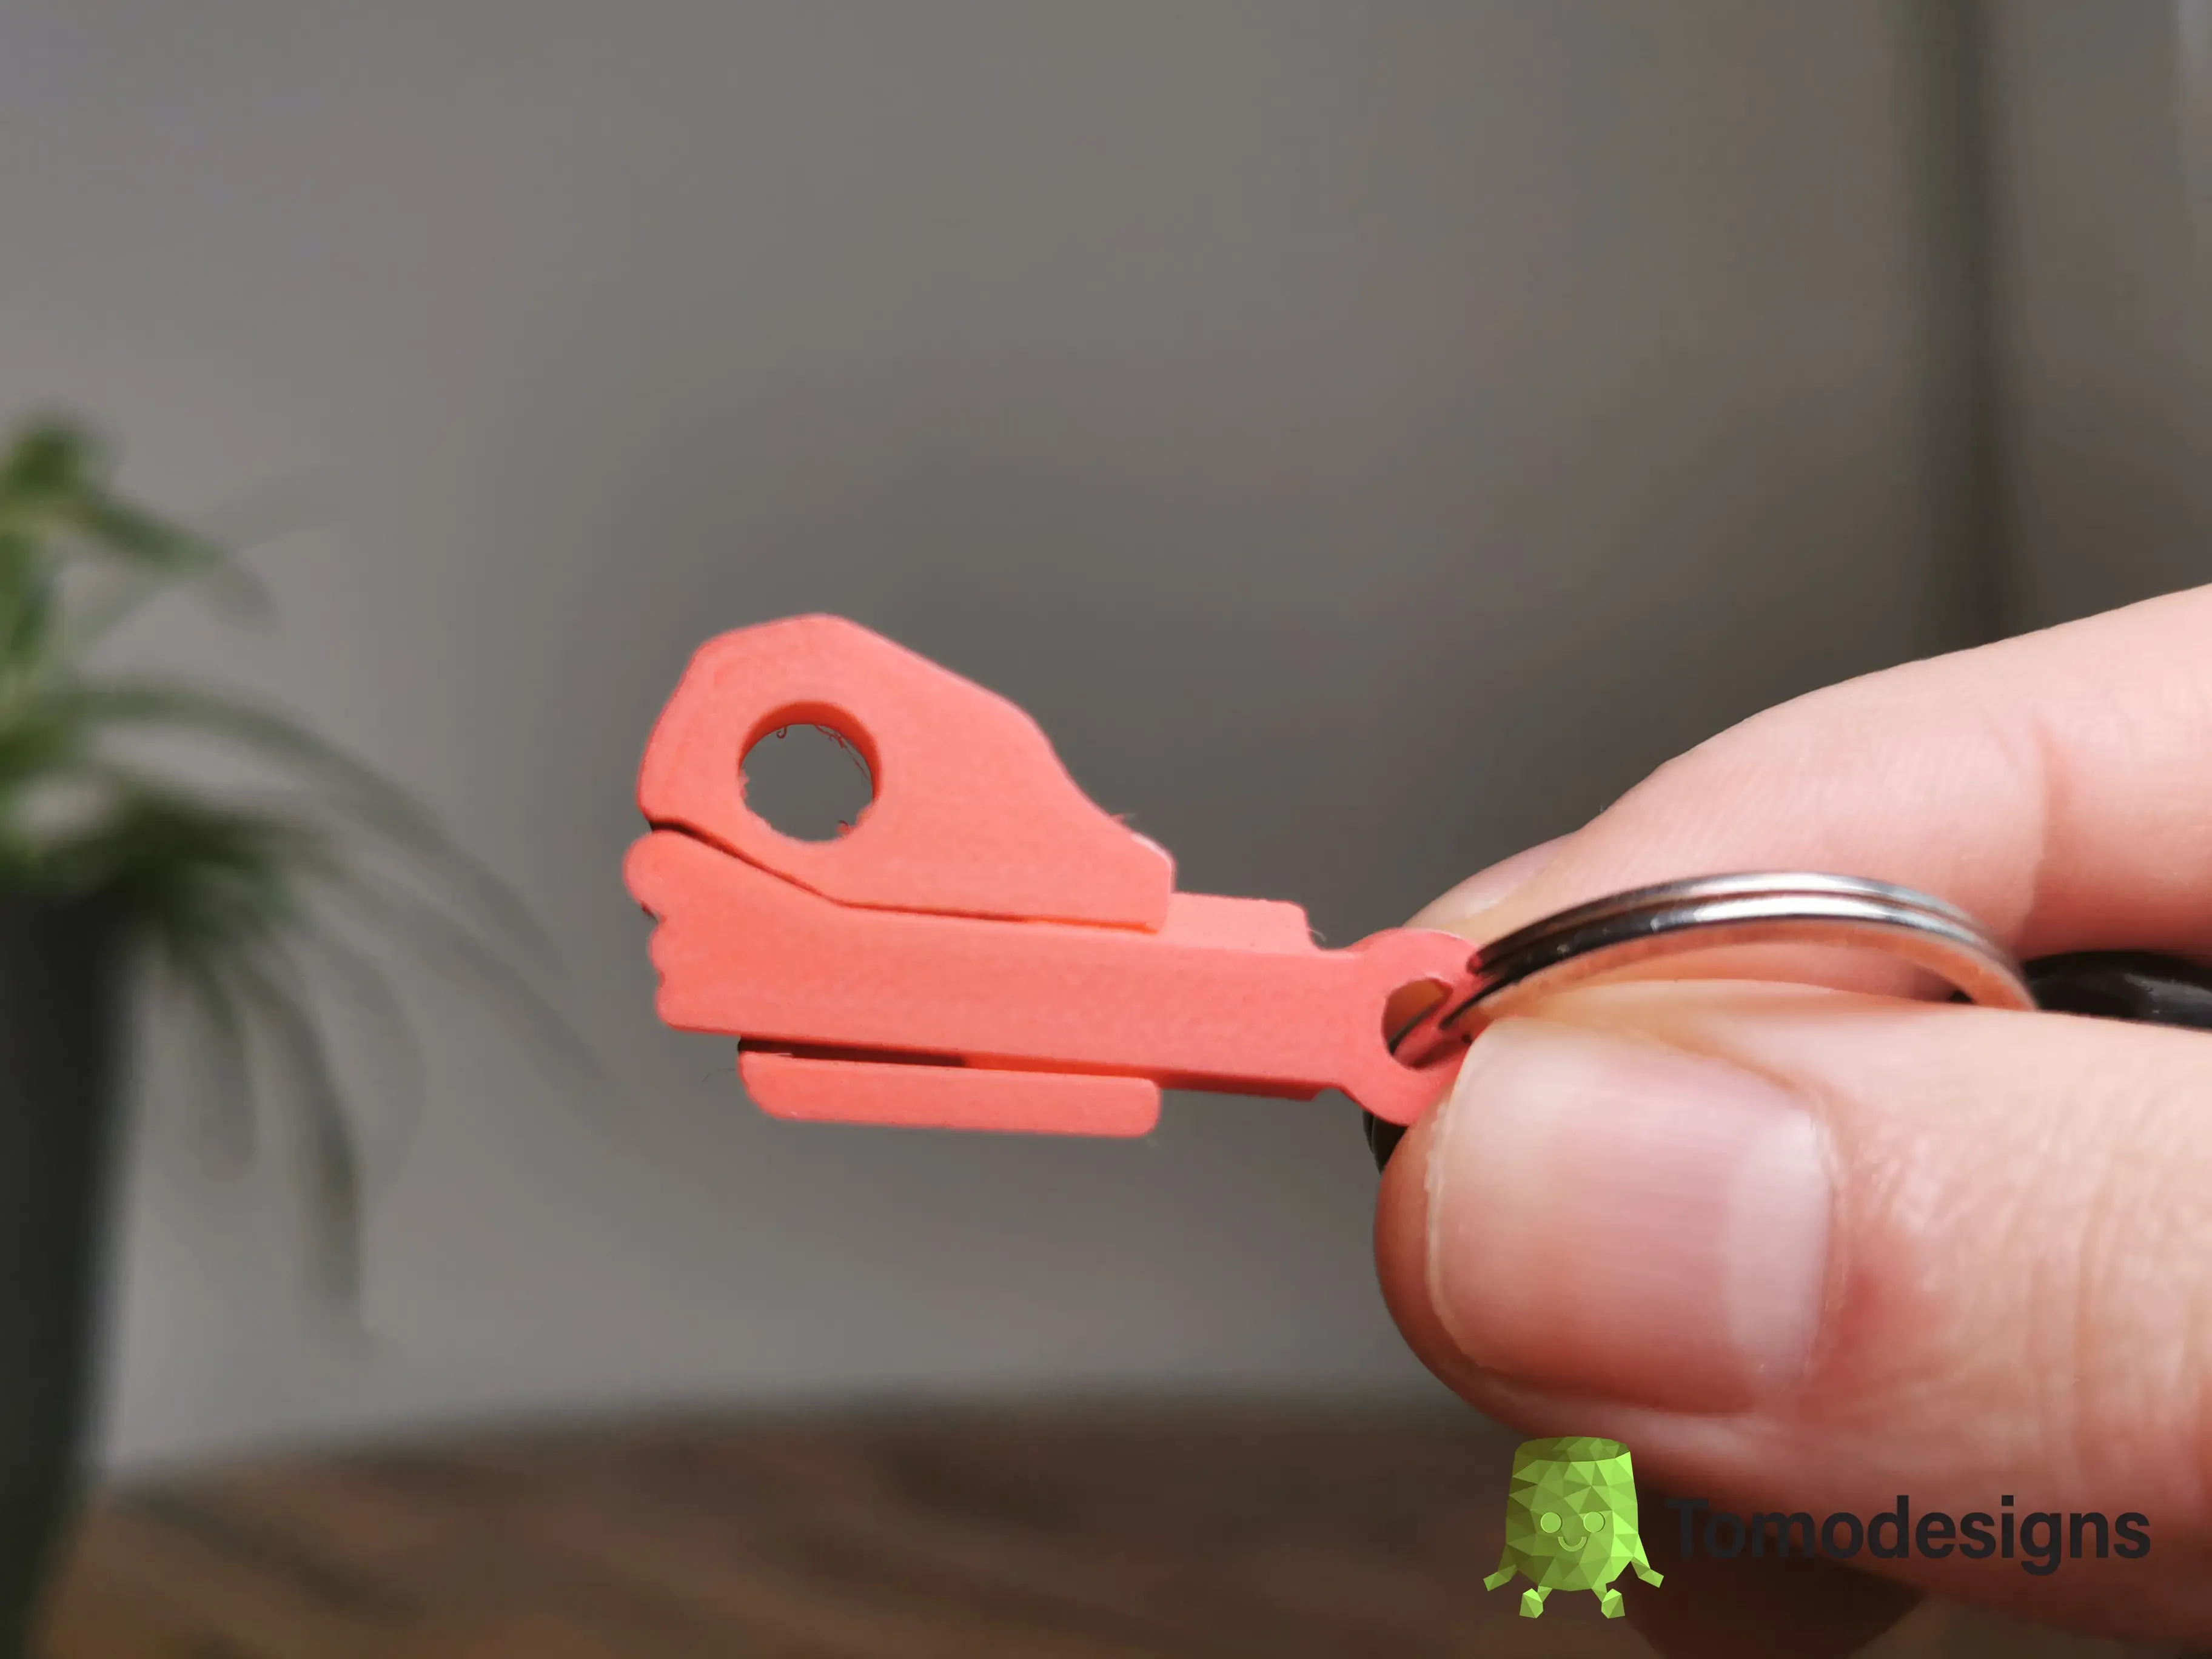 Mini Flip OK Hand Keychain